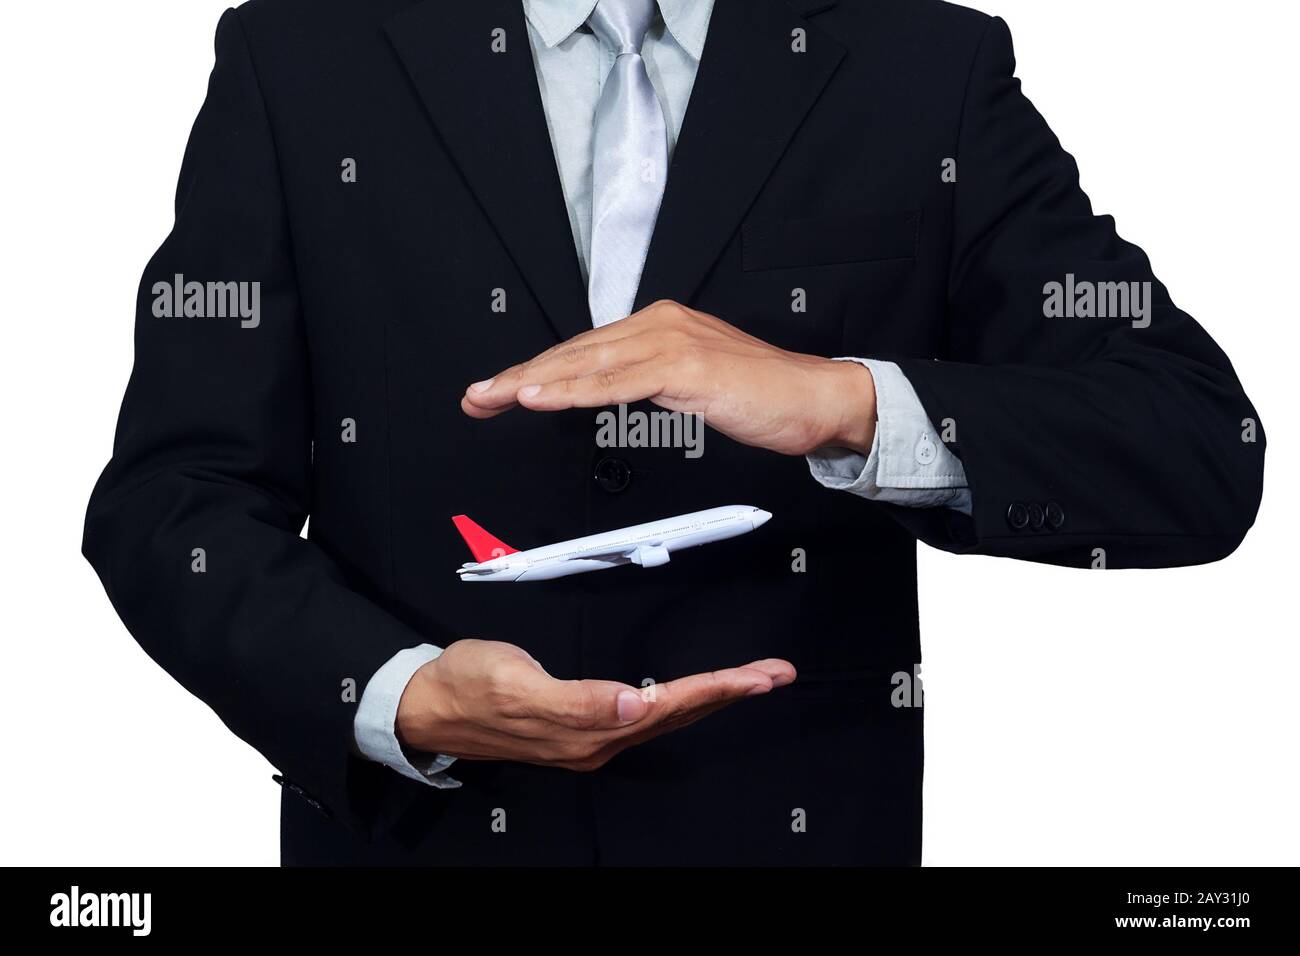 Flug in der Hand des Geschäftsmannes, isoliert auf weißem Hintergrund mit Clipping-Pfad. Geschäft der Reise- und Transportbranche Stockfoto